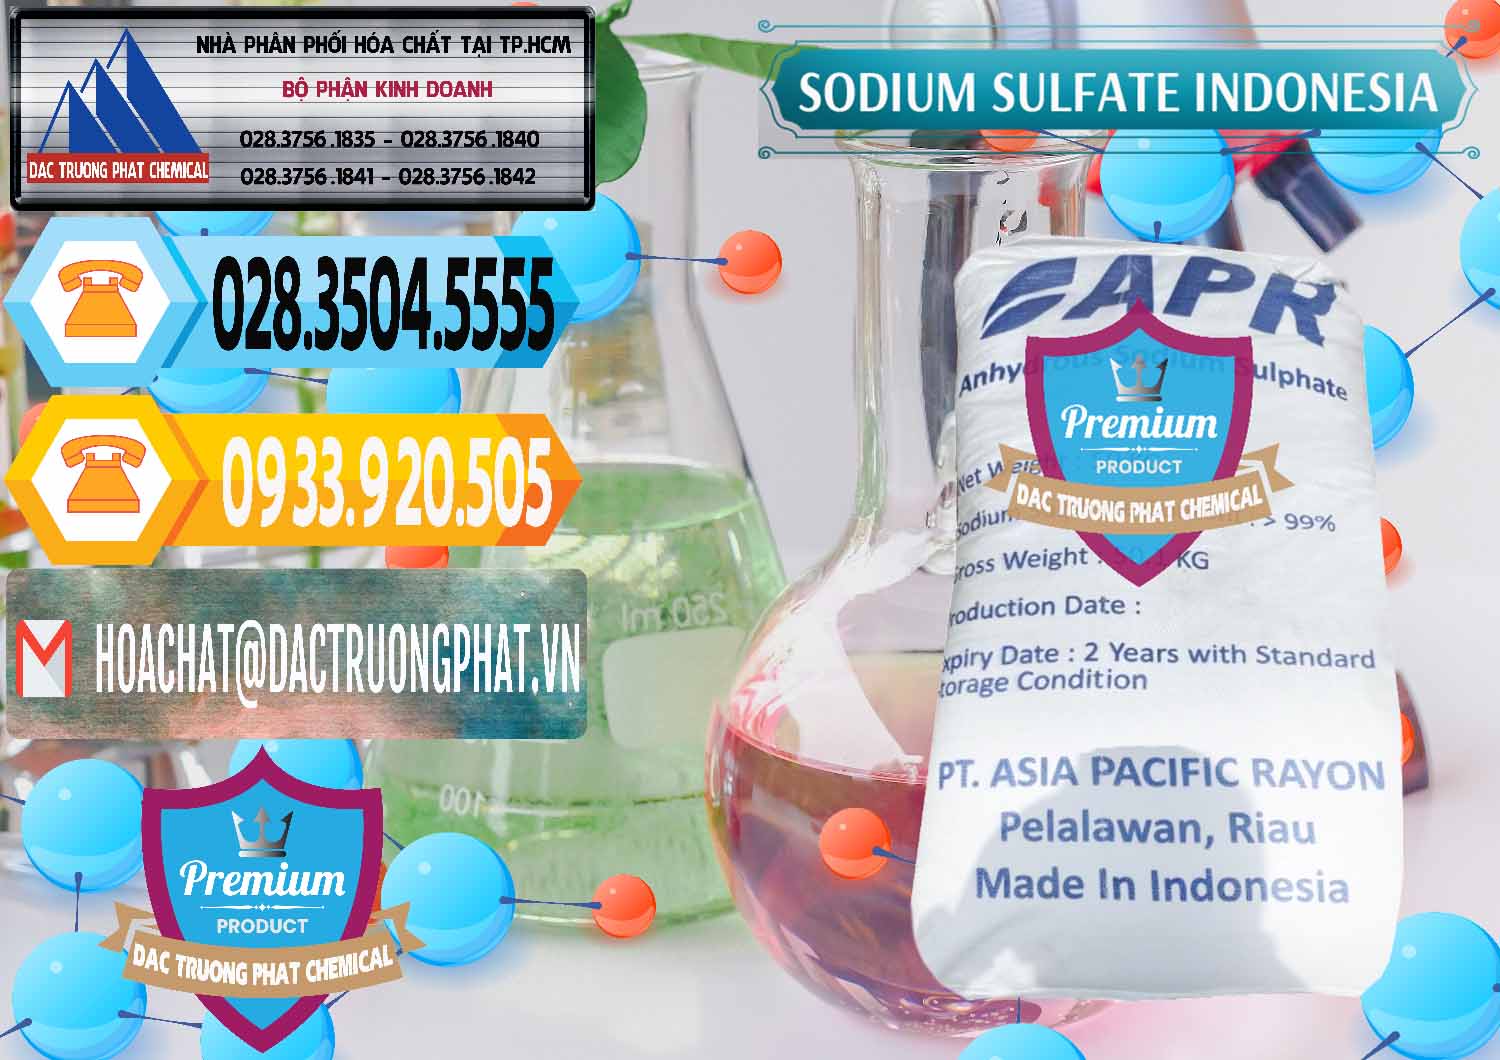 Nơi cung ứng _ bán Sodium Sulphate - Muối Sunfat Na2SO4 APR Indonesia - 0460 - Công ty bán ( cung cấp ) hóa chất tại TP.HCM - hoachattayrua.net